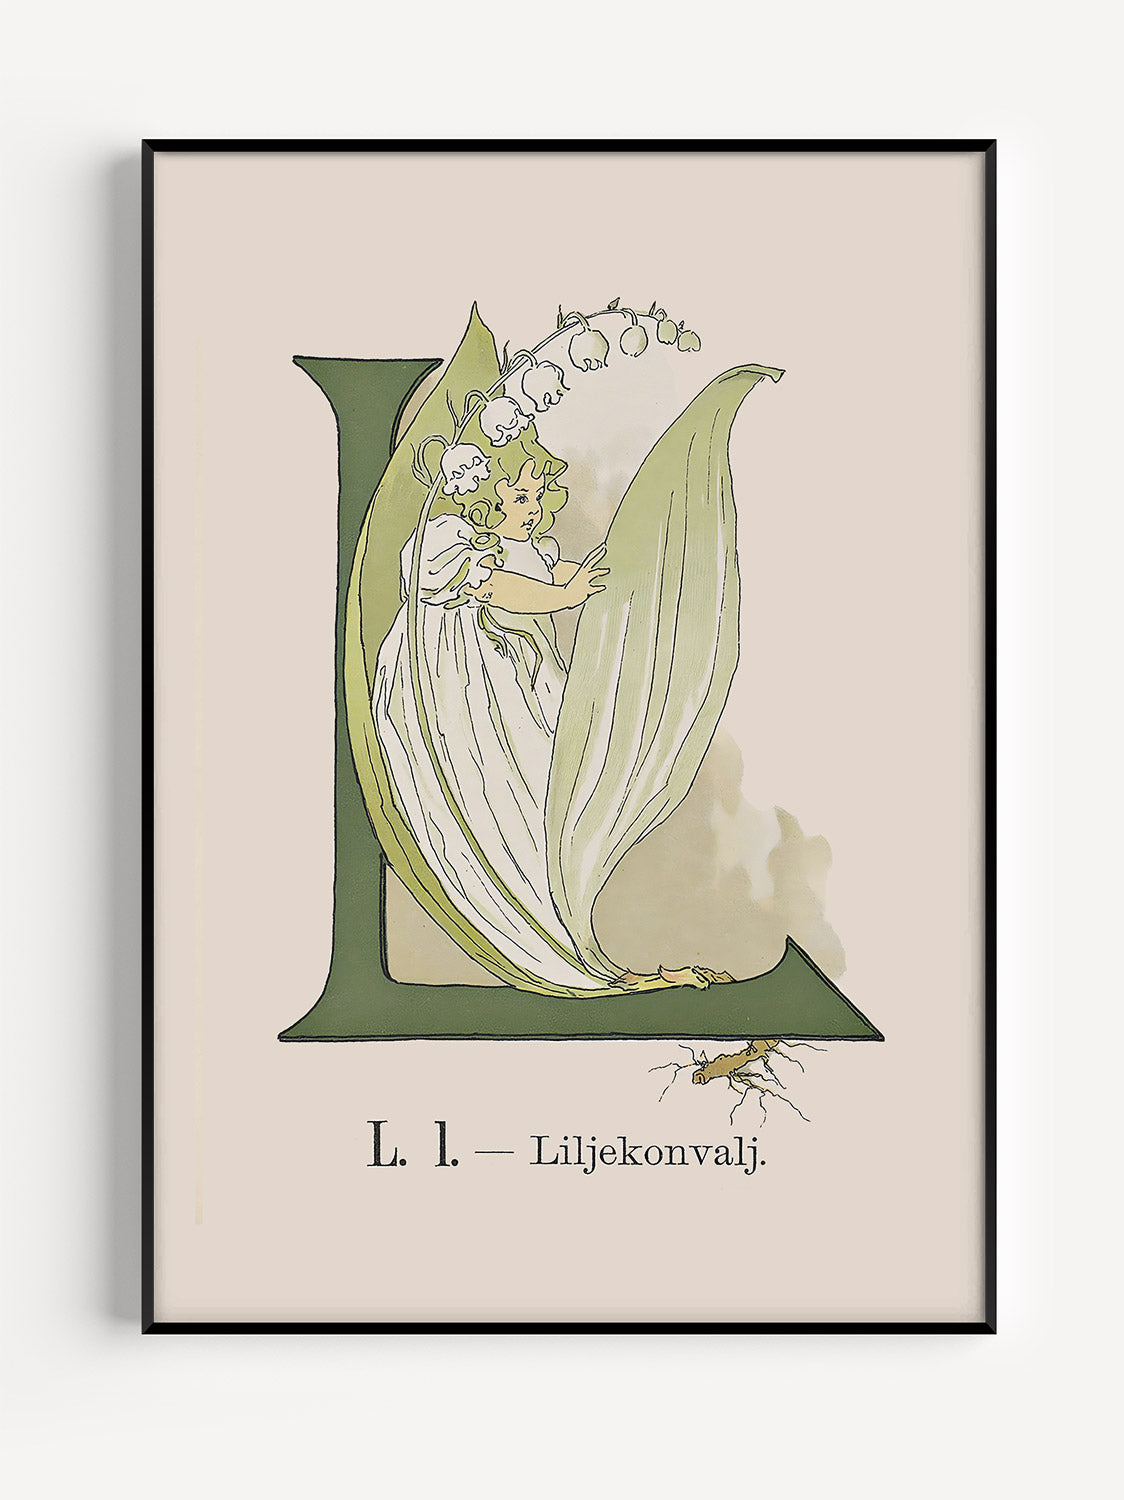 Prinsarnes Alfabet - Bokstaven L - Fine art prints - poster - av Ottilias originalillustrationer från 1800-talet.